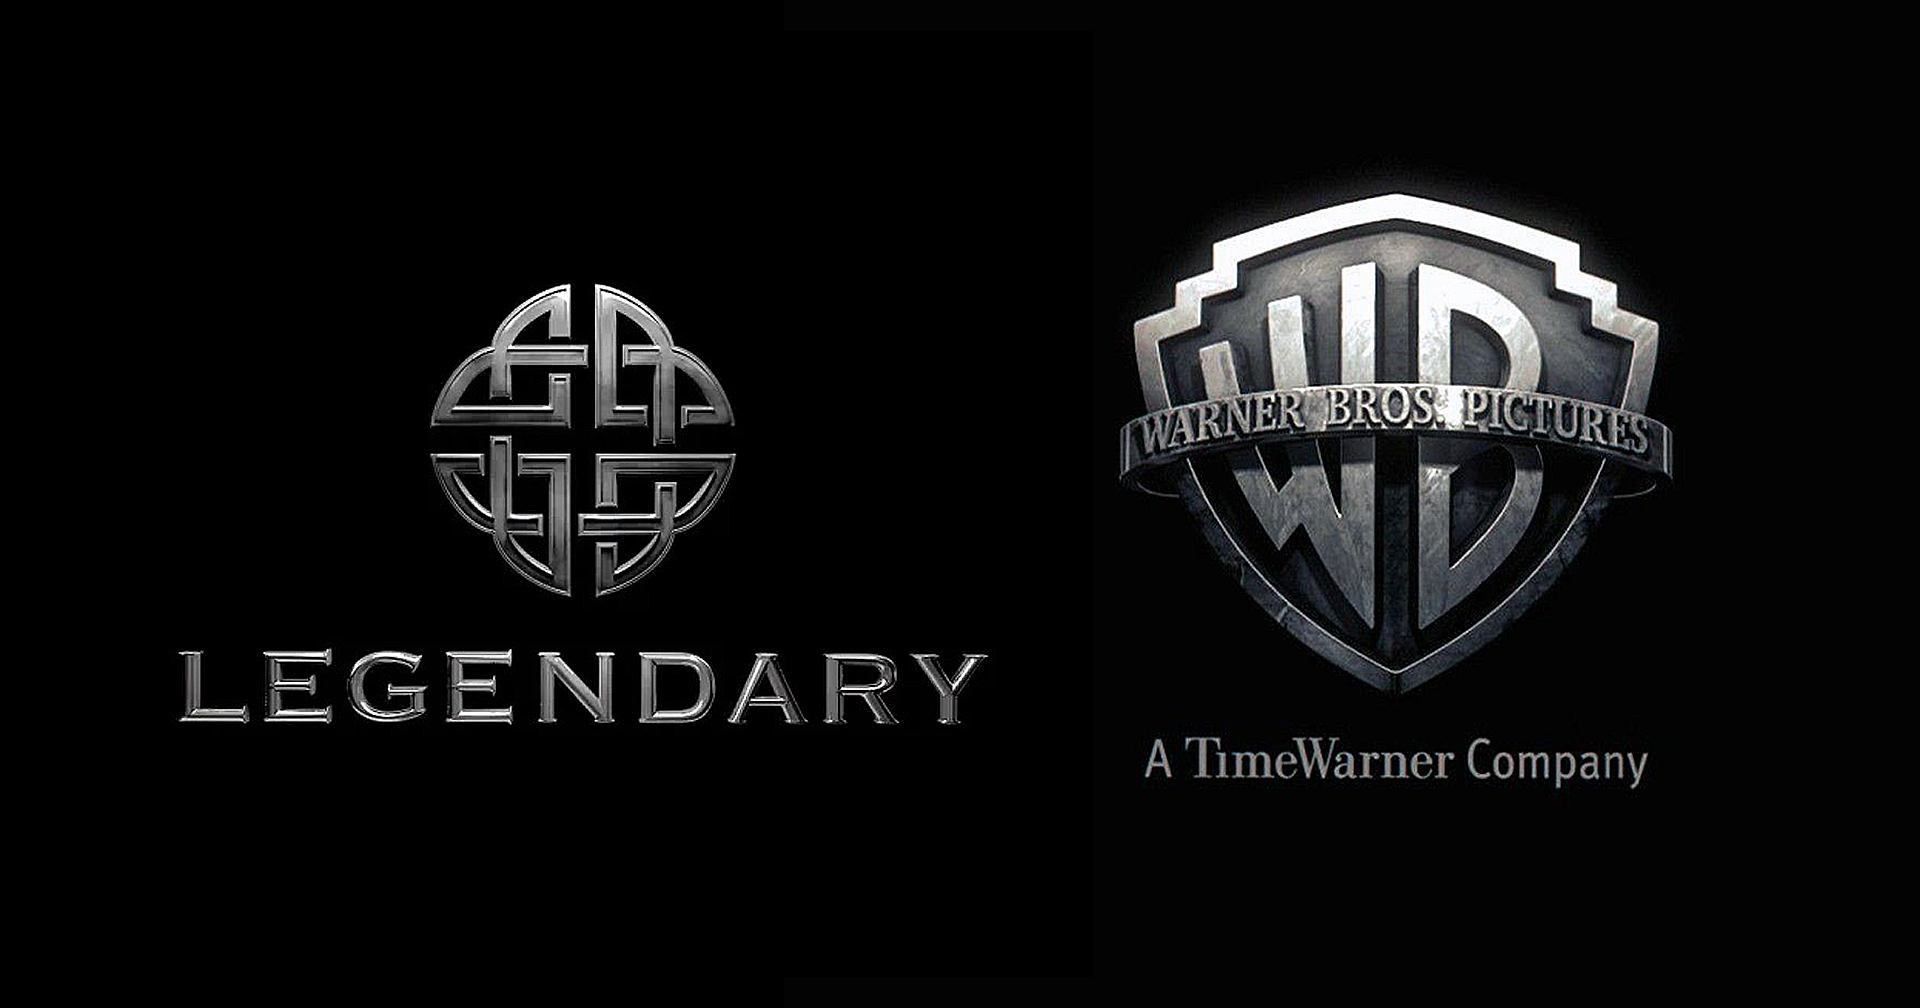 Legendary เล็งไปร่วมงานกับสตูดิโออื่น หลังสิ้นสุดดีลกับ Warner Bros.